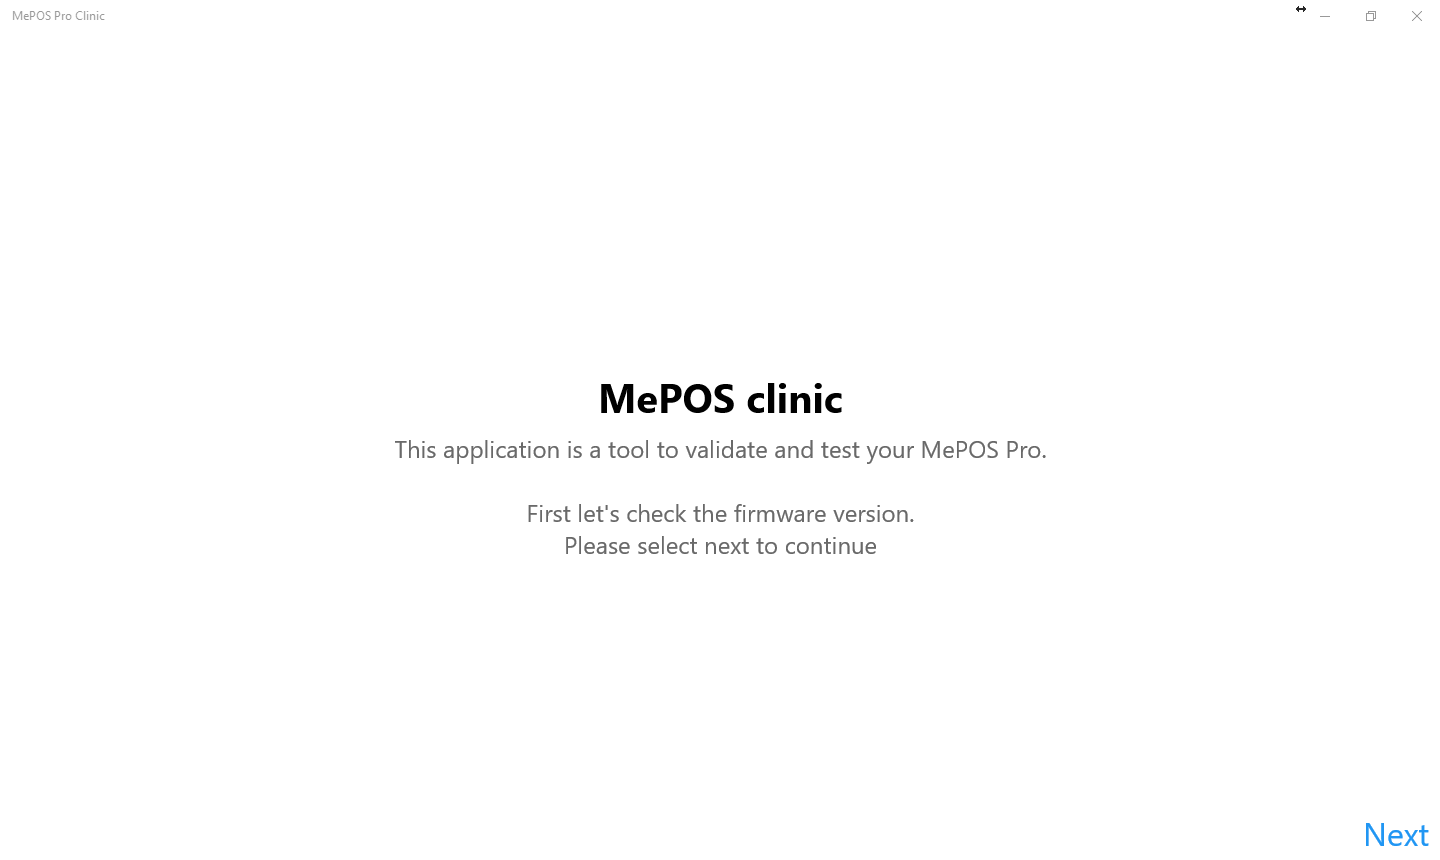 MePOS Pro Clinic